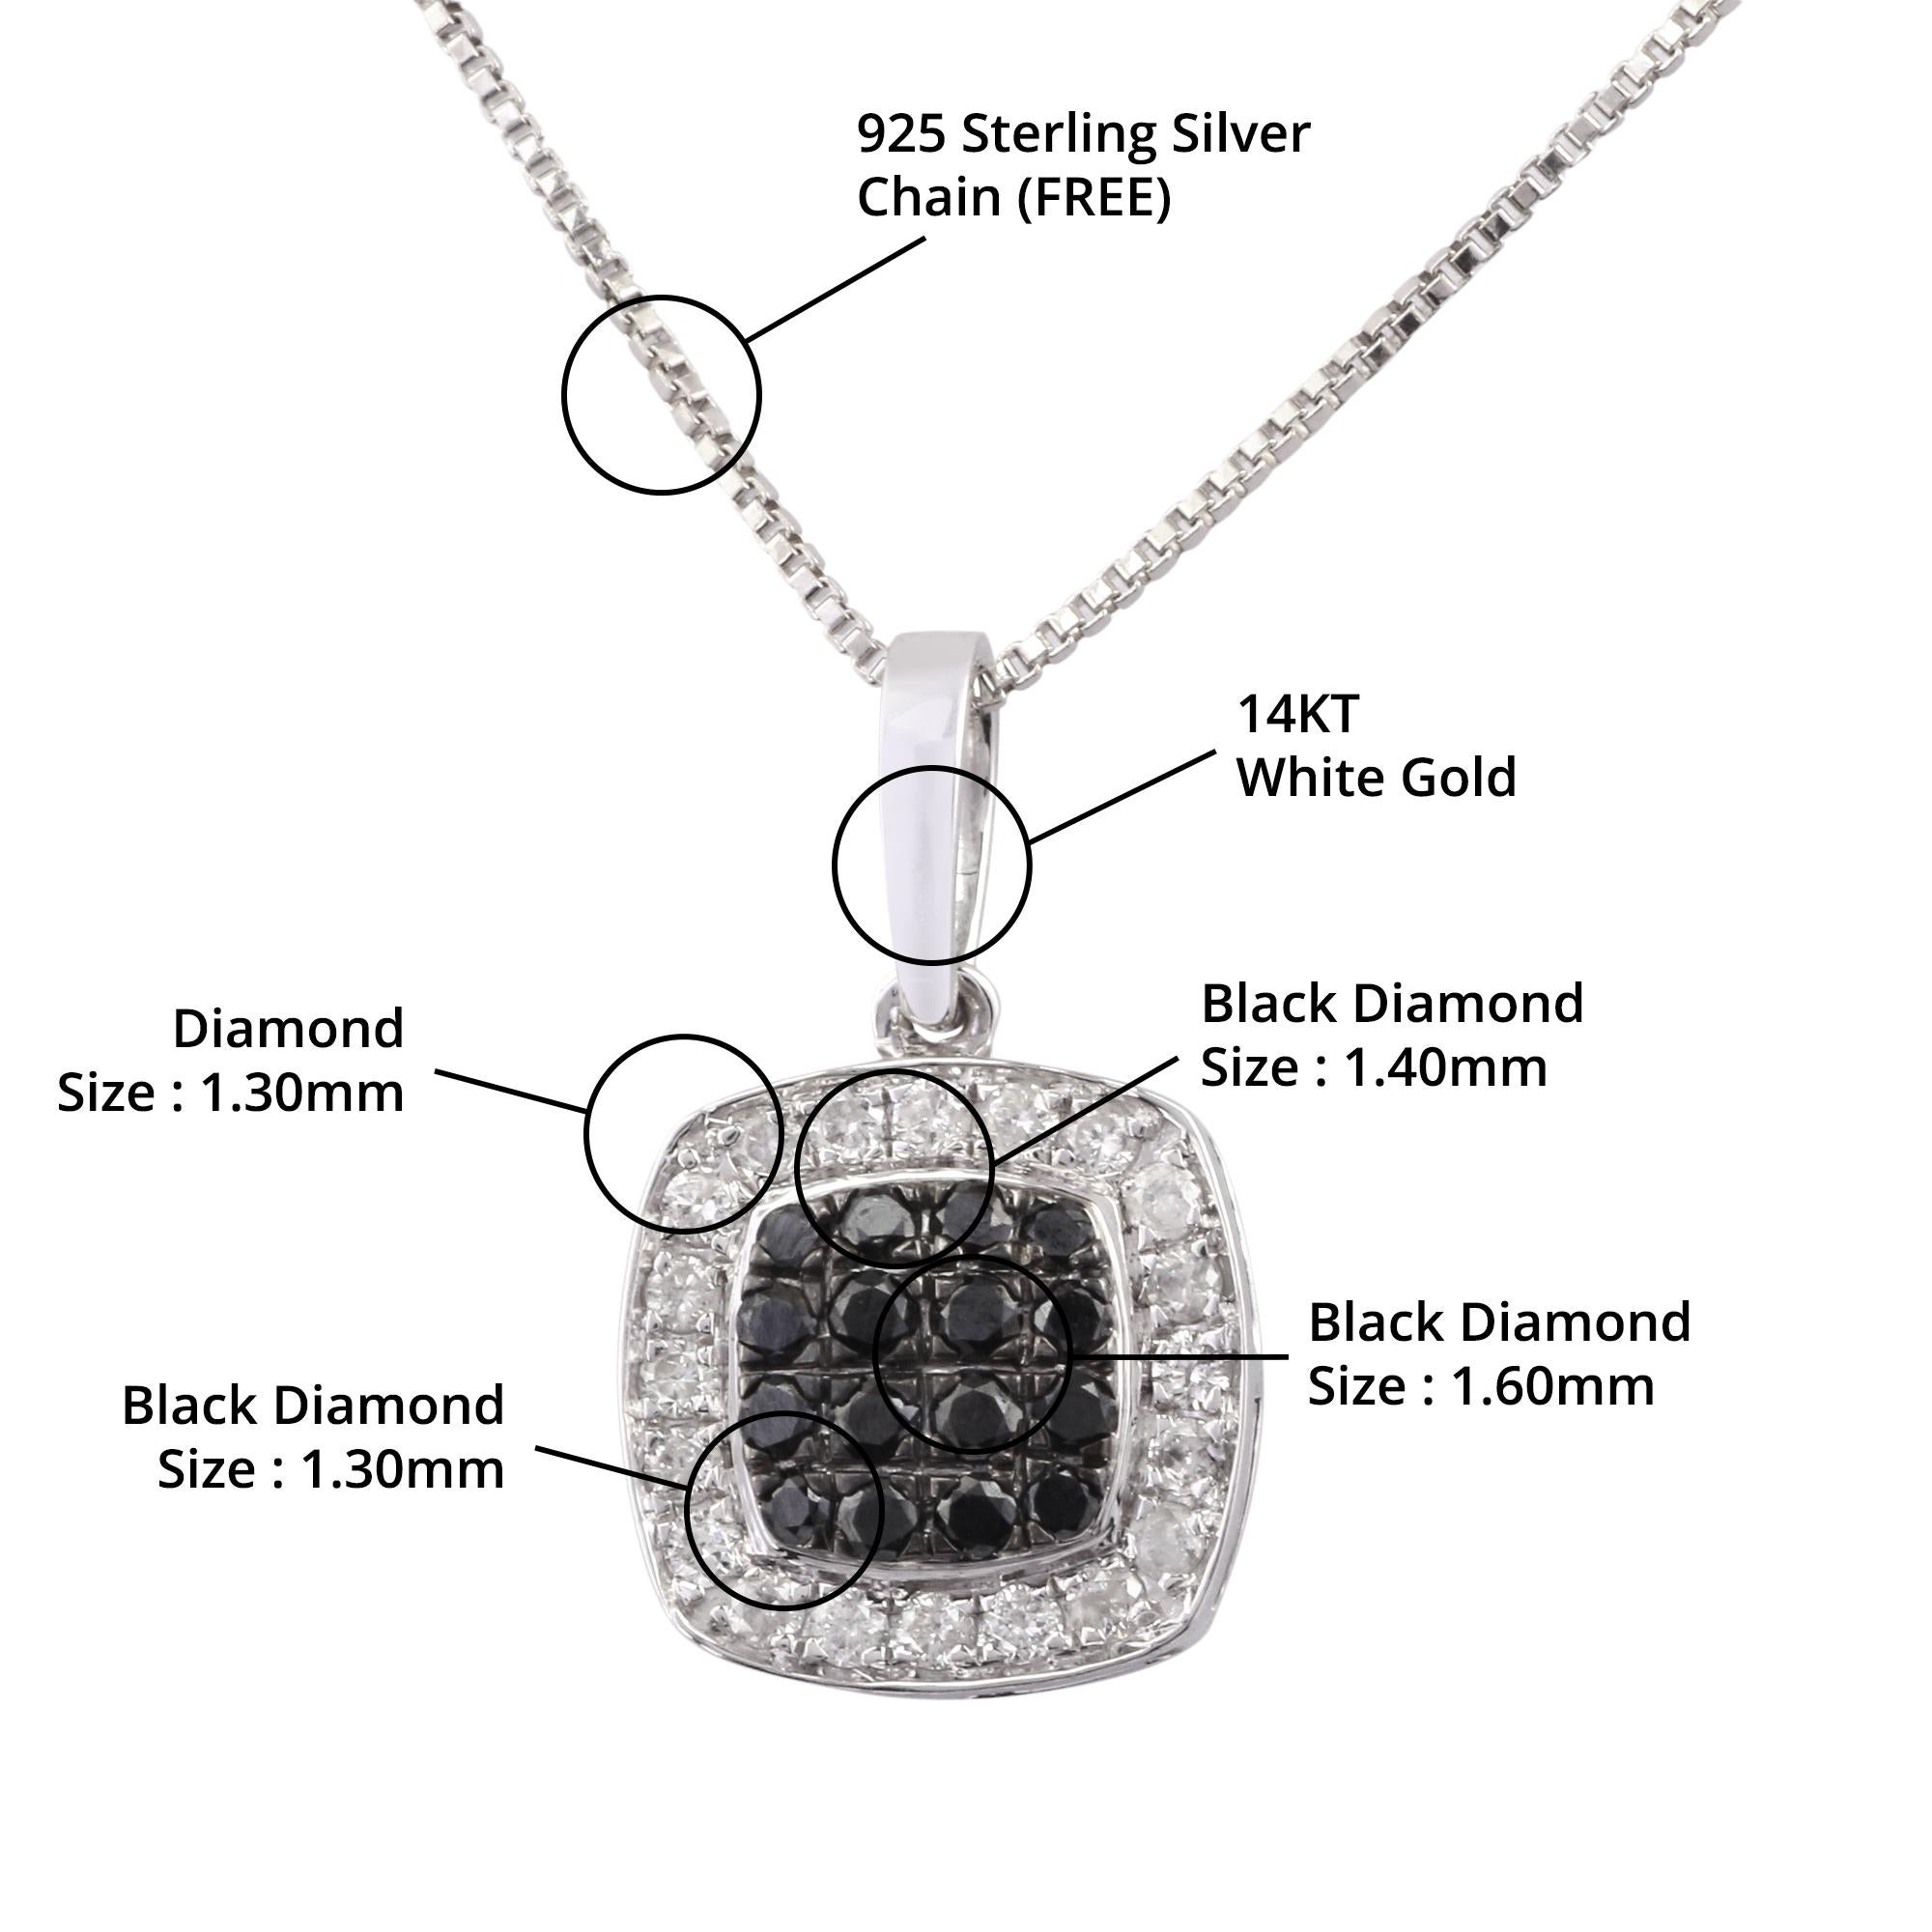 Détails de l'article:-

✦ SKU:- JPD00157WWW

✦ Matériau :- Or

✦ Pureté du métal : or blanc 14K

✦ Gemstone Specification:- 
✧ Diamant rond transparent (l1/H1) - 1.30mm - 20 pièces
✧ Véritable diamant noir - 1.30mm - 4 pièces
✧ Véritable diamant